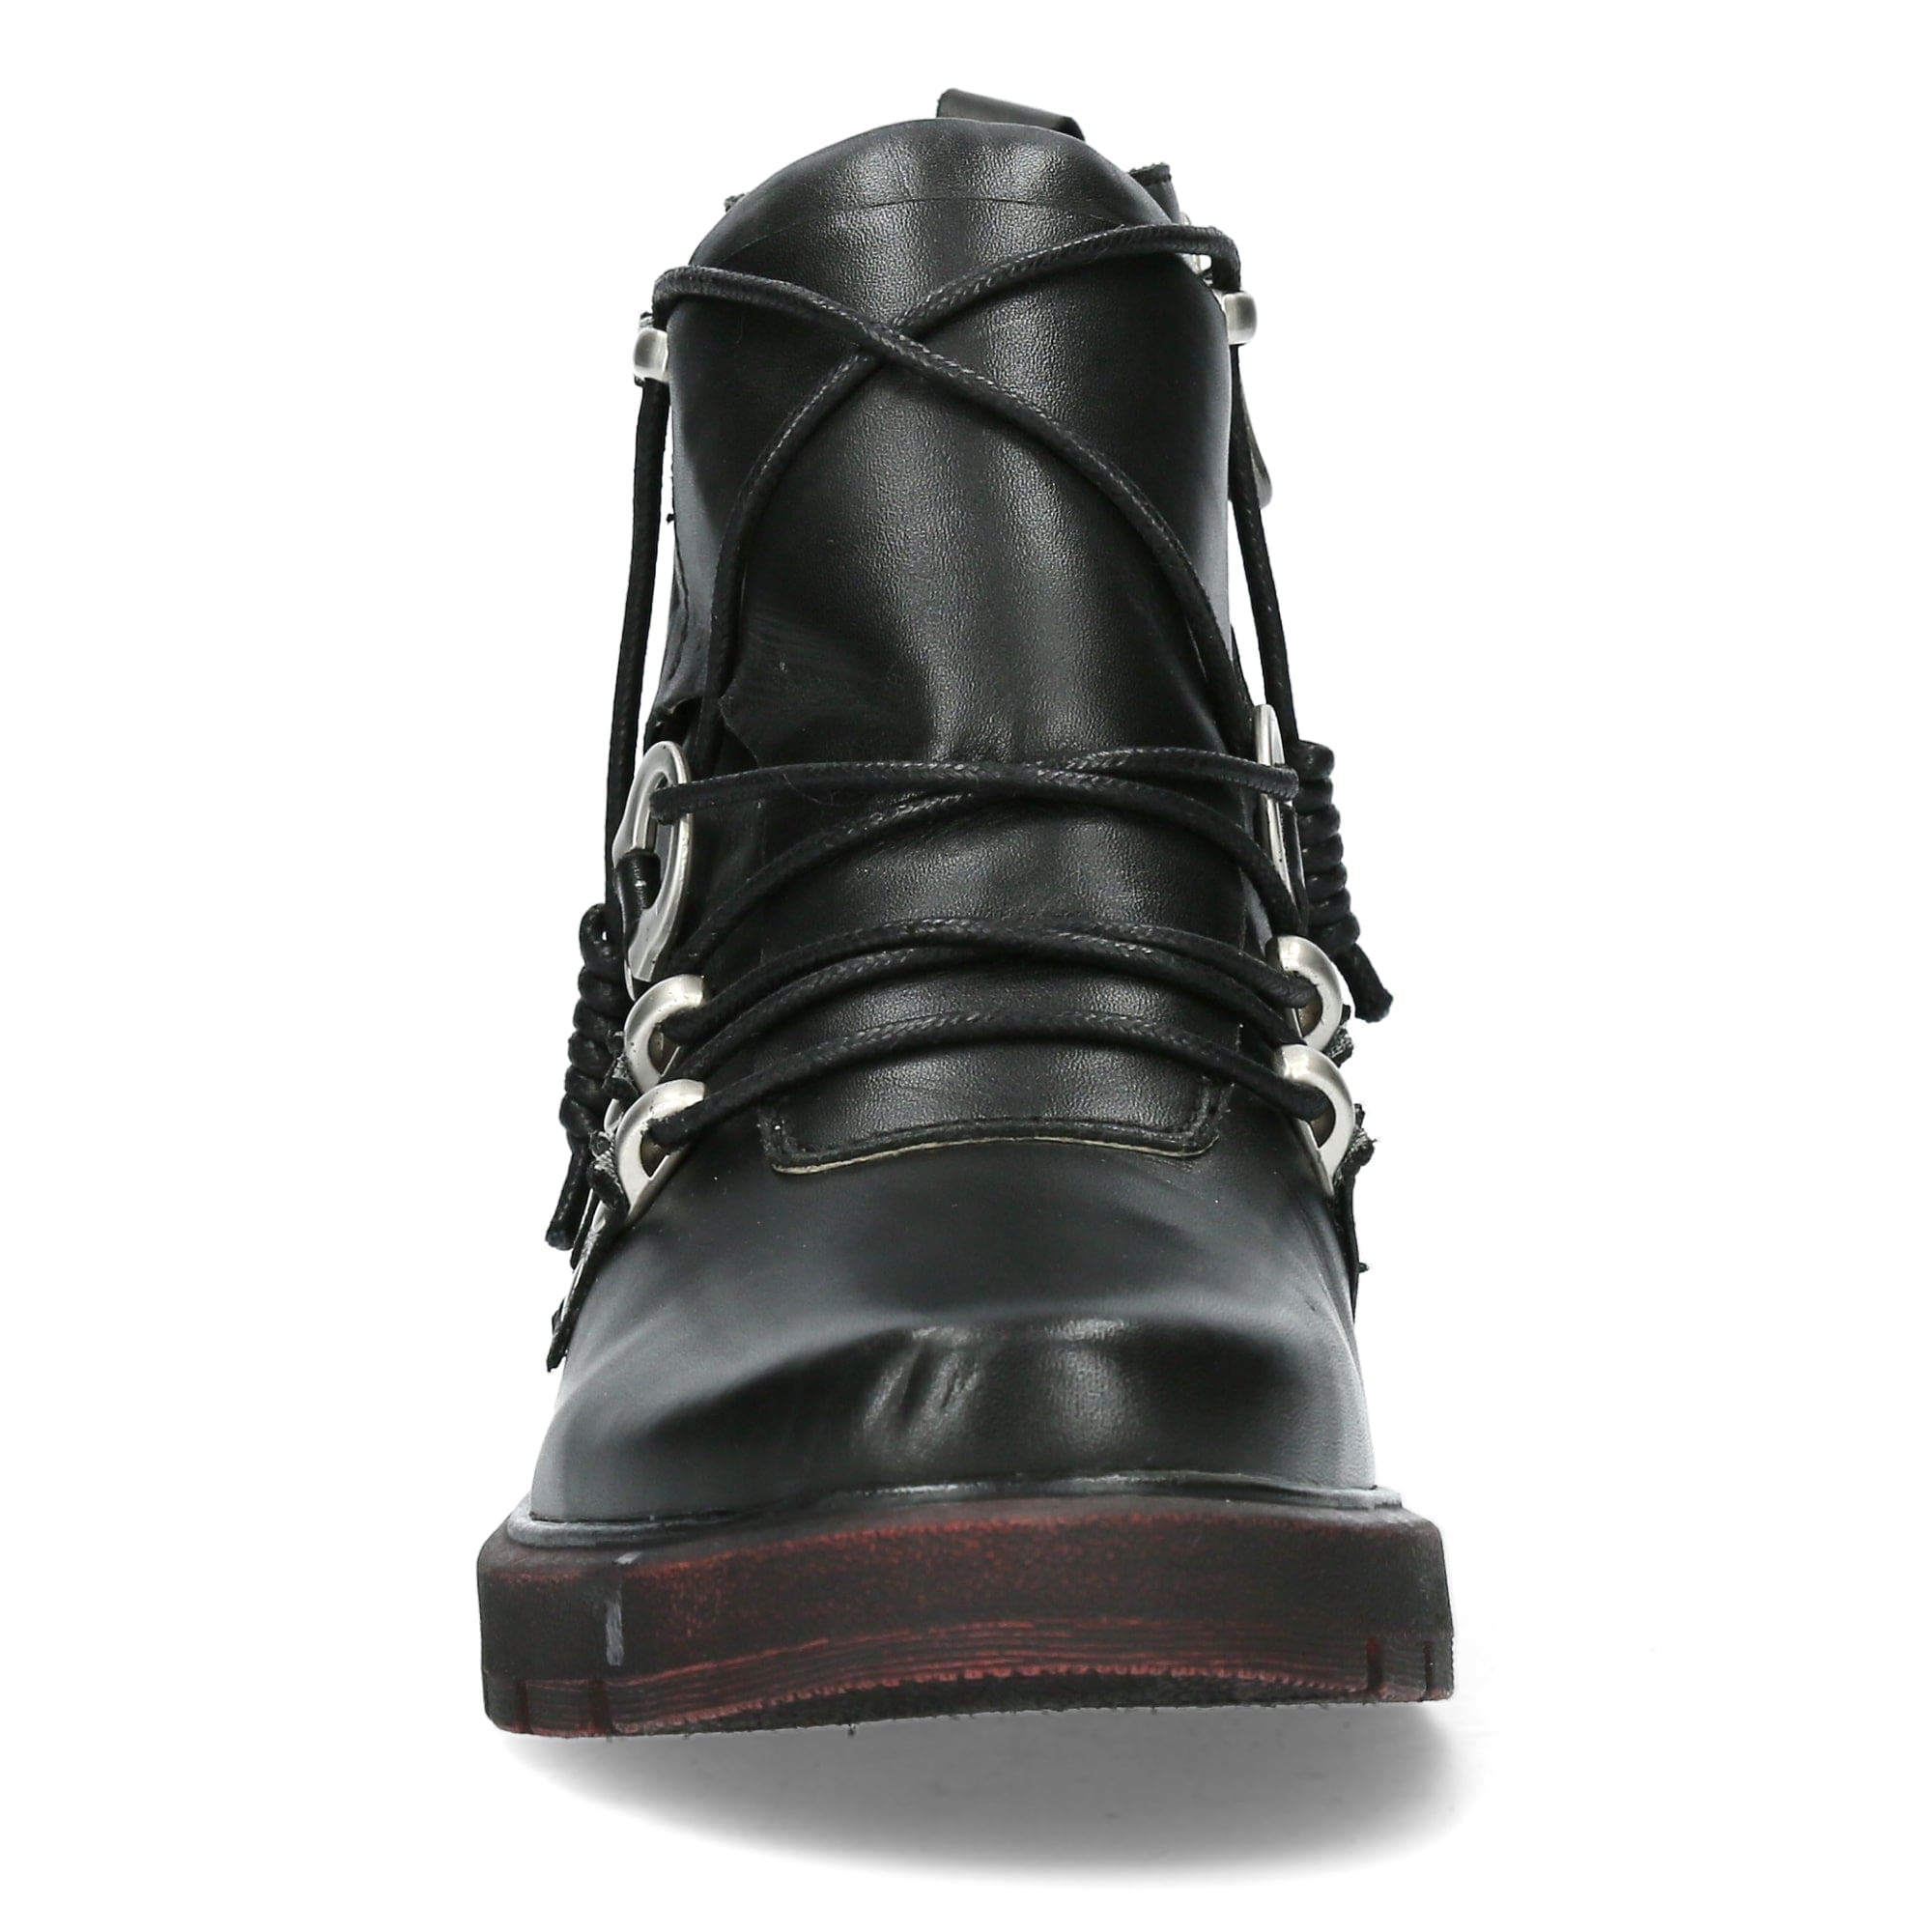 Shoe IDCEAO 06 - Boots